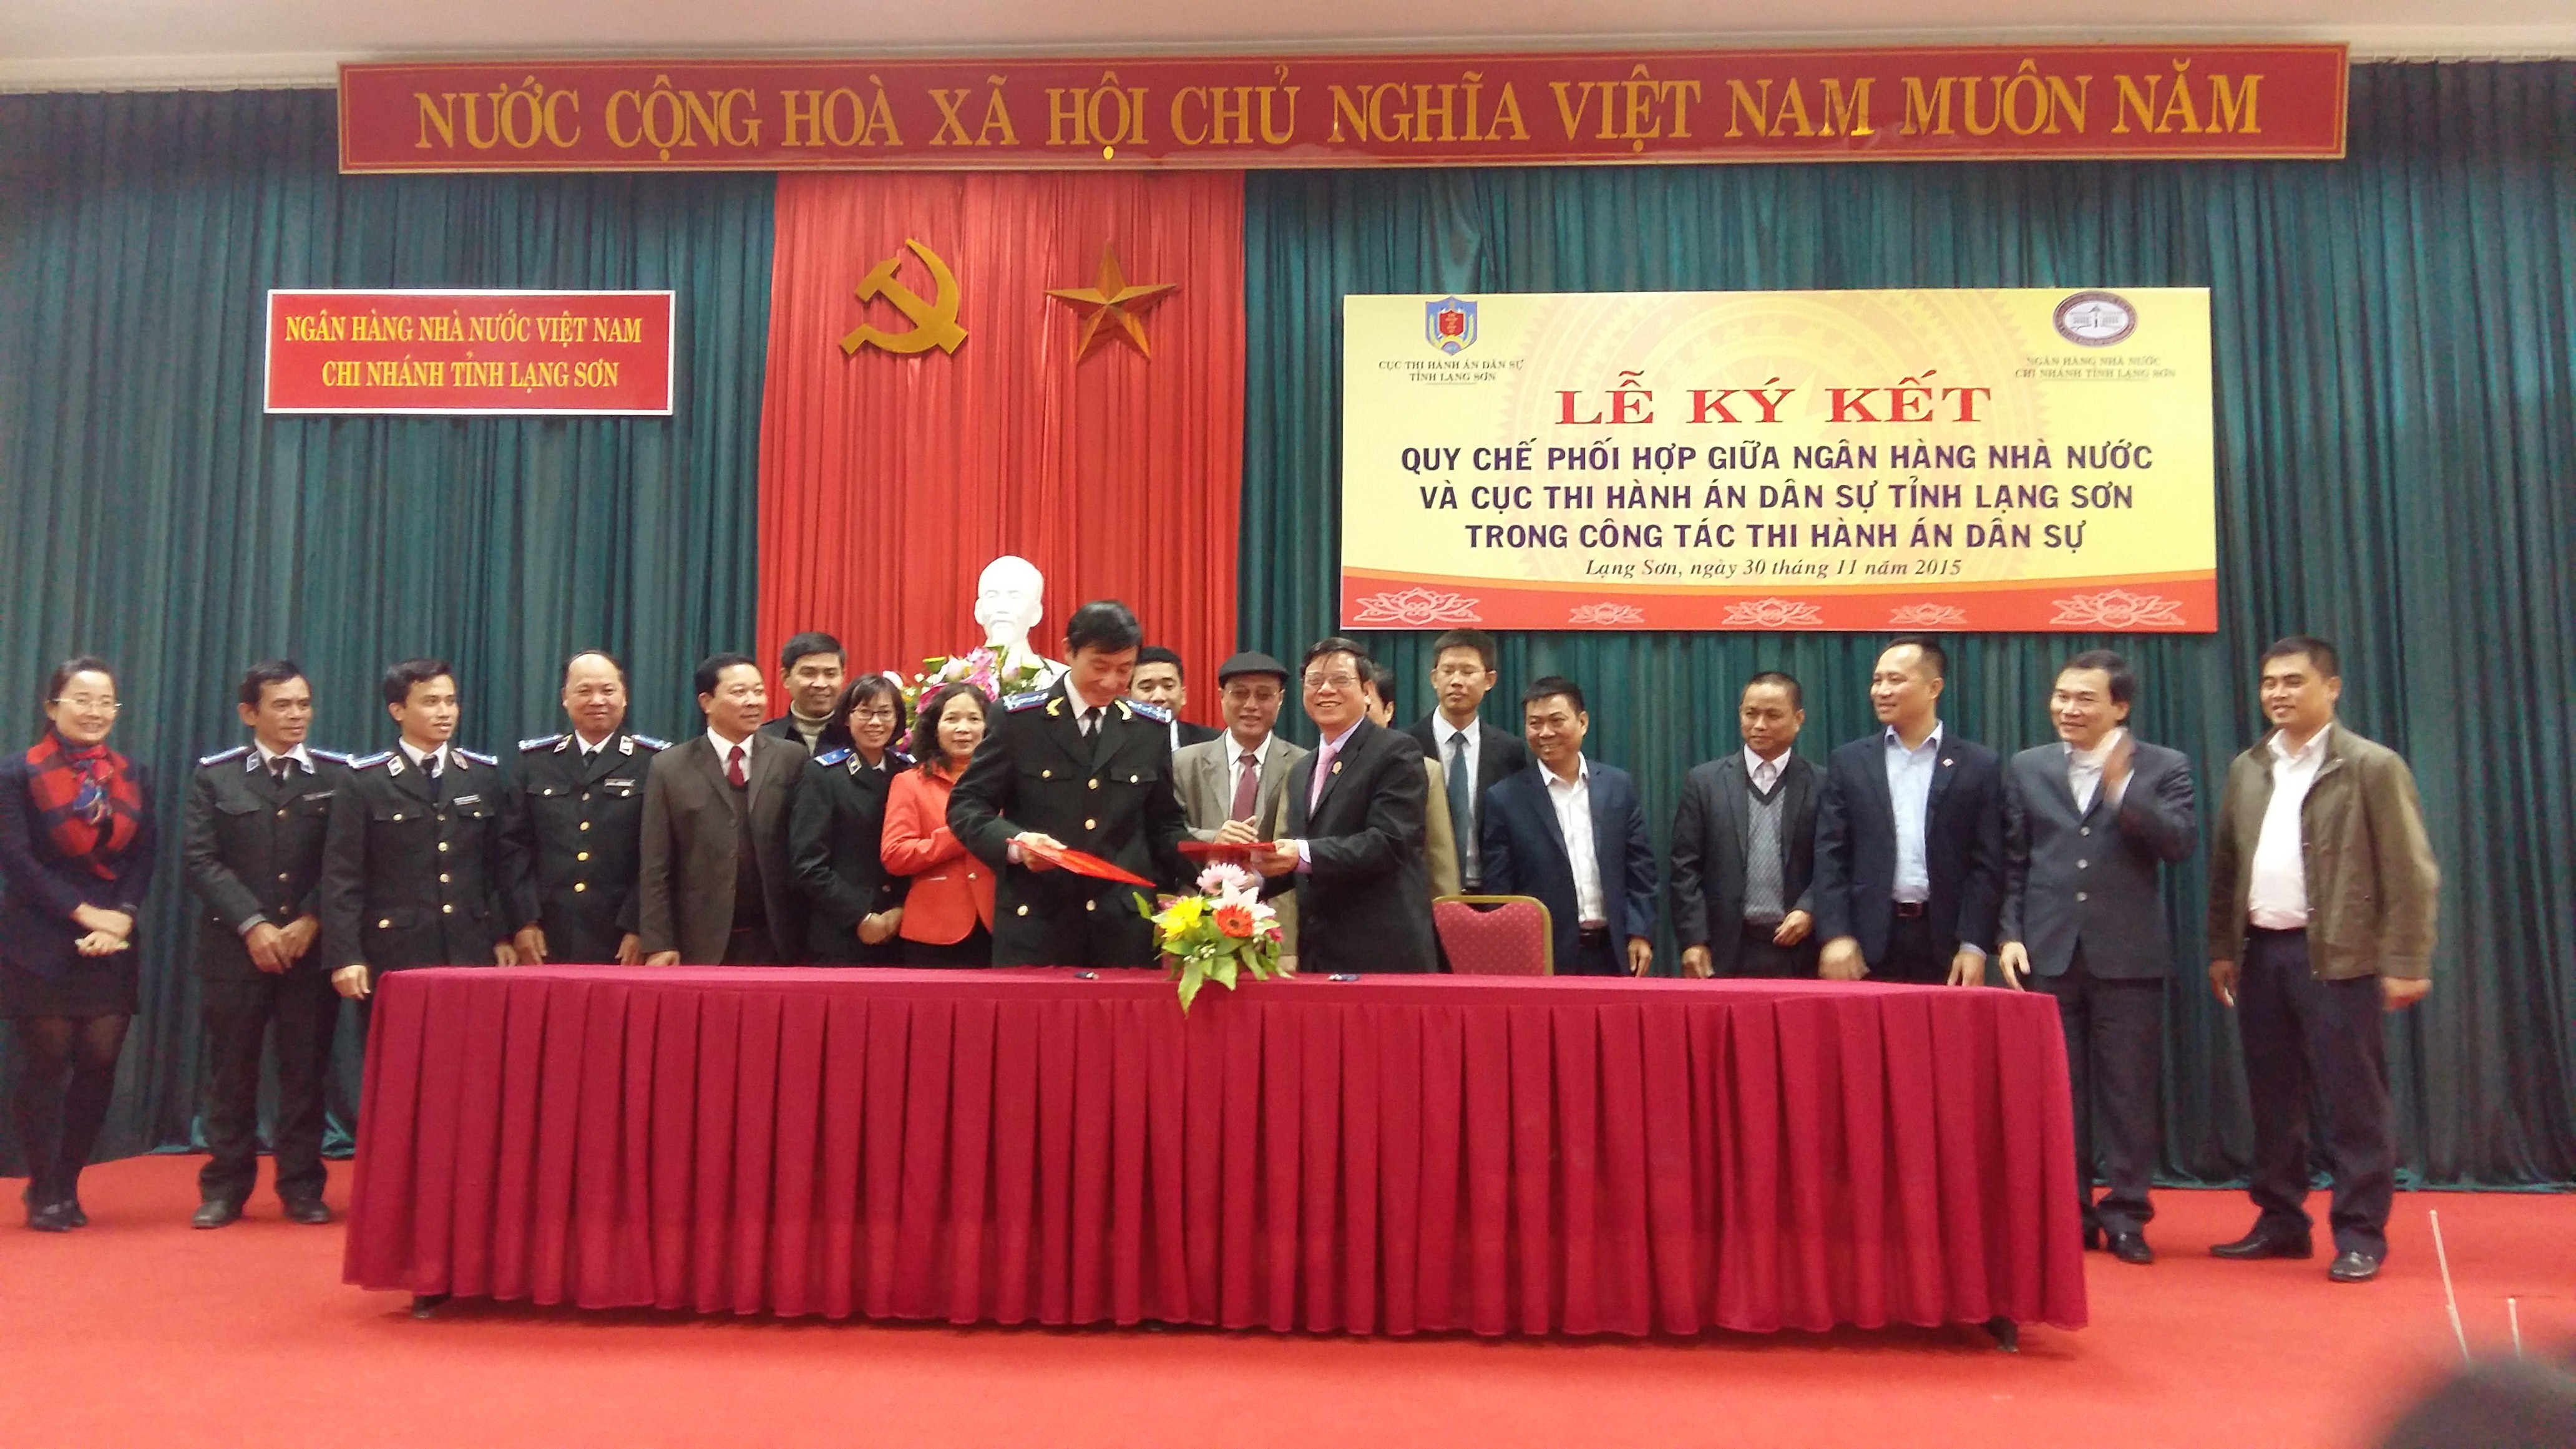 Cục Thi hành án dân sự và Ngân hàng Nhà nước chi nhánh tỉnh Lạng Sơn tổ chức Lễ ký kết Quy chế phối hợp trong công tác thi hành án dân sự